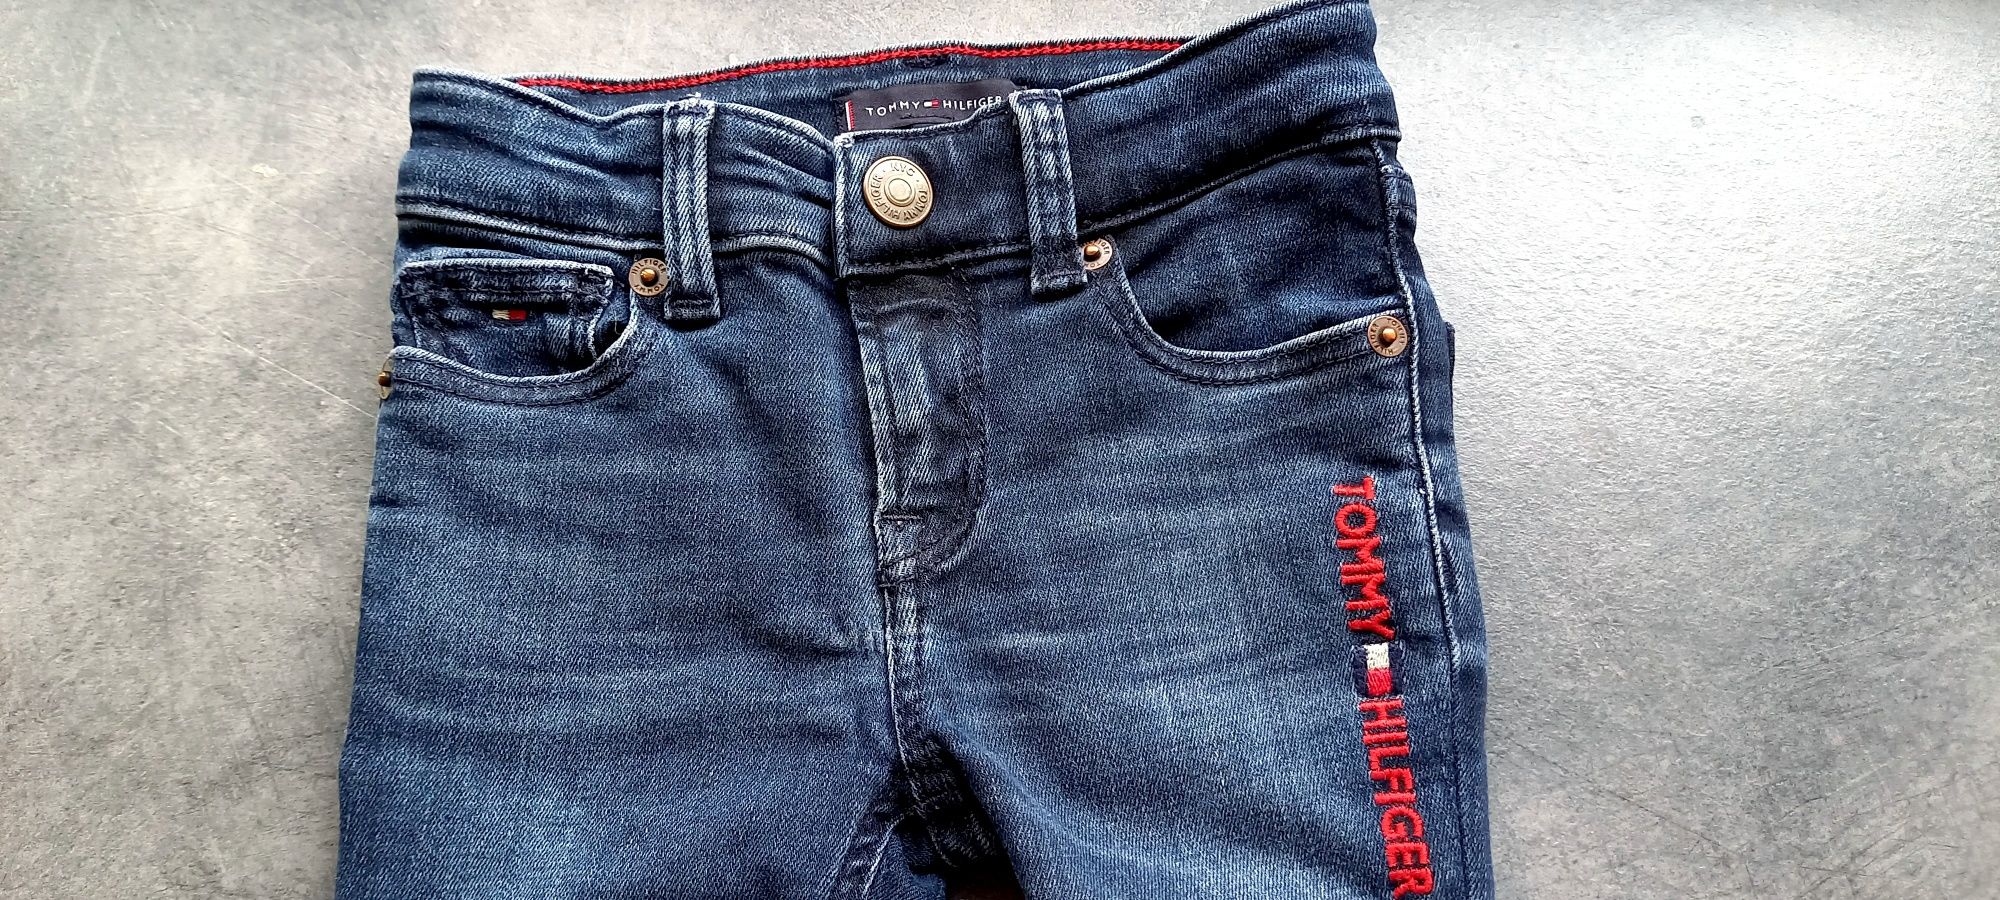 Tommy Hilfiger, chłopięce spodnie jeansowe, roz.86cm